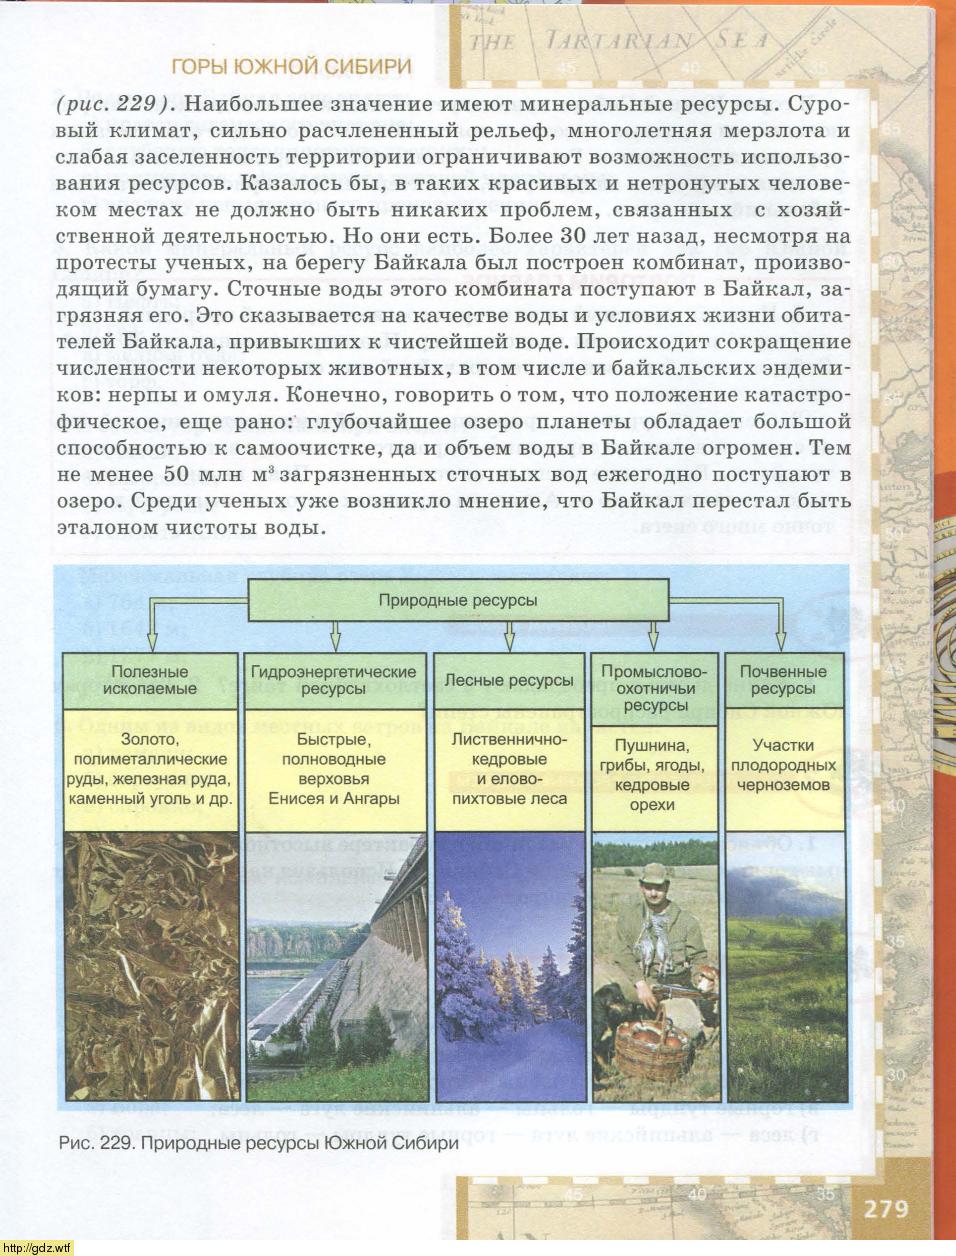 Природные ресурсы гор Южной Сибири